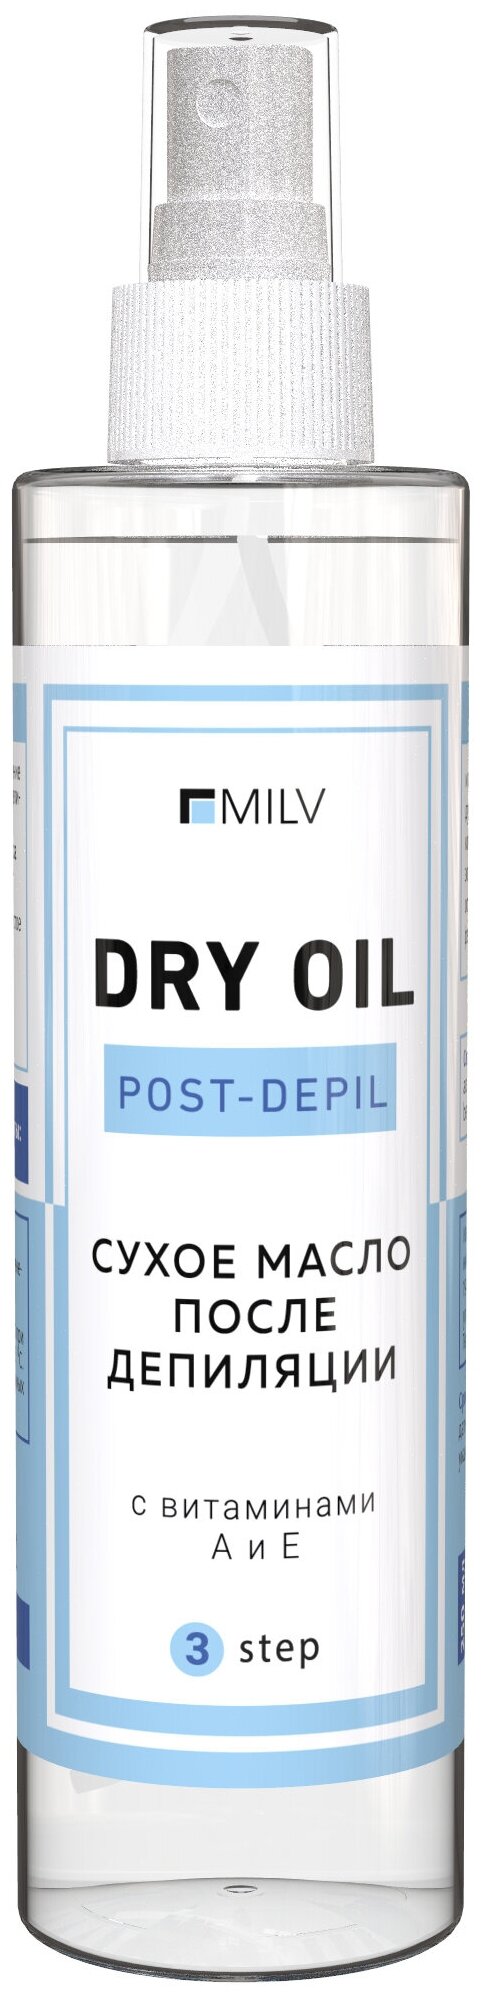 MILV сухое масло после депиляции 250 мл 216 г